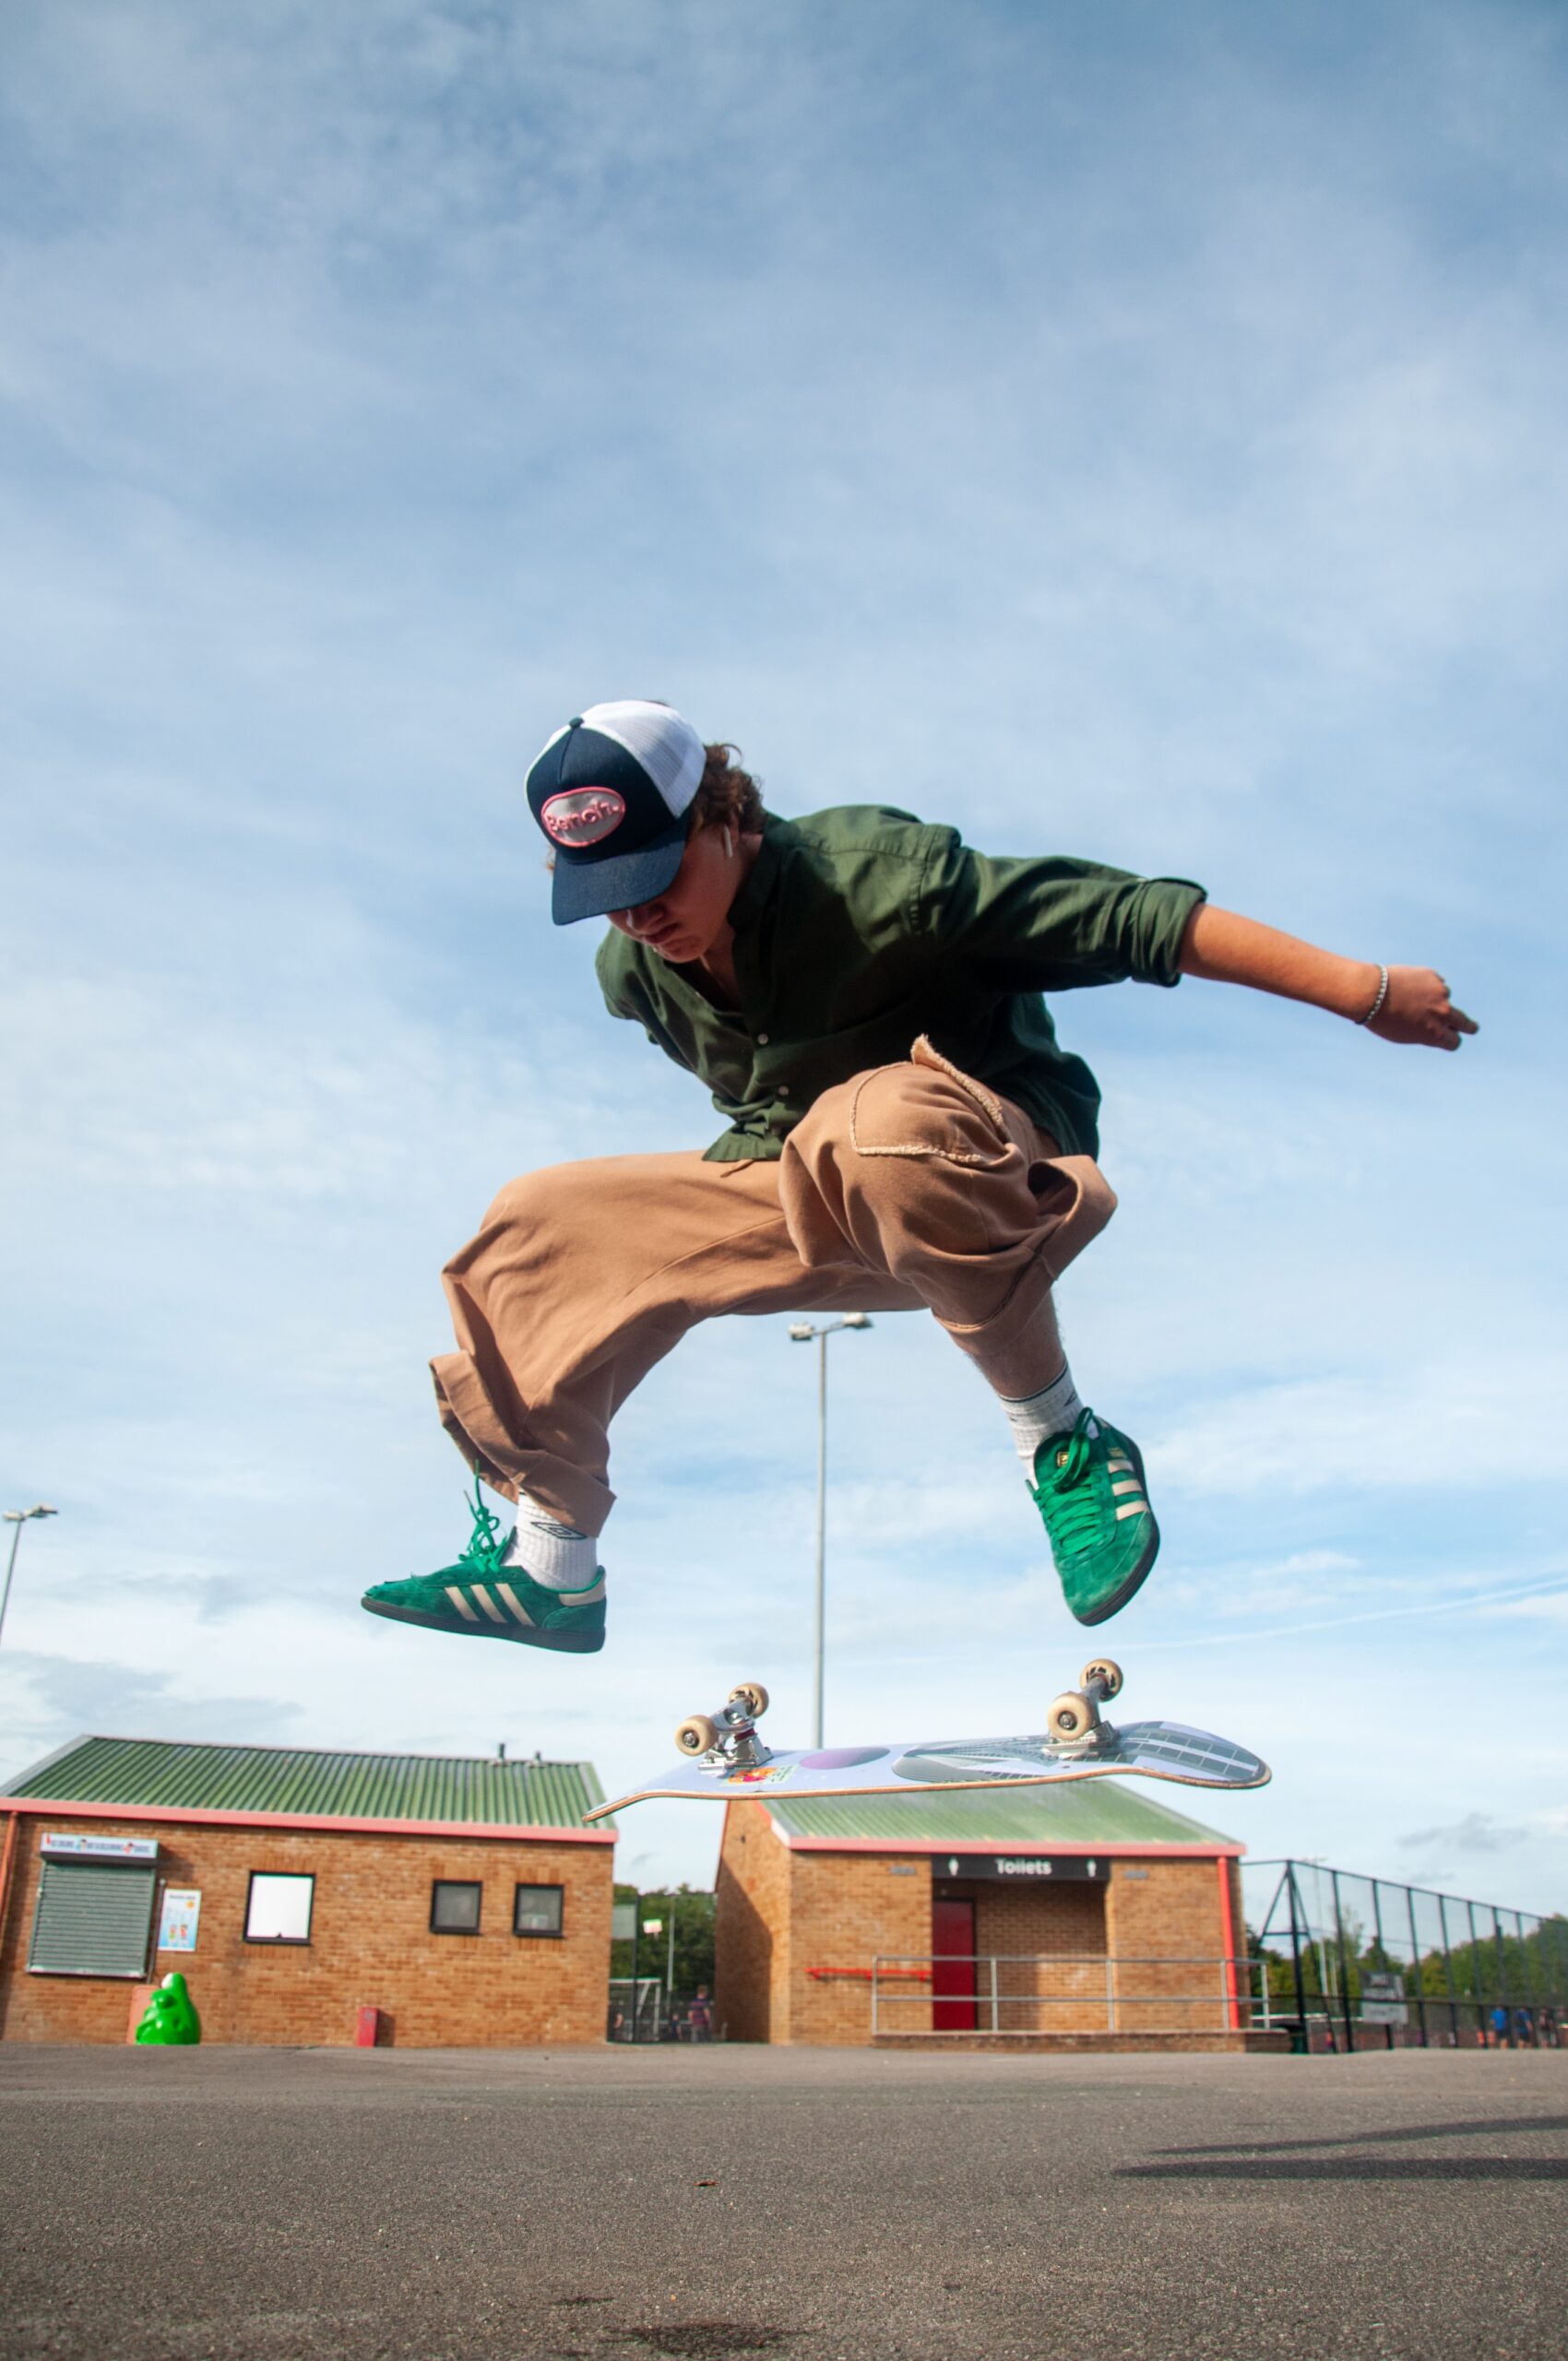 How Do I Safely Practice Skateboard Handstand Tricks?